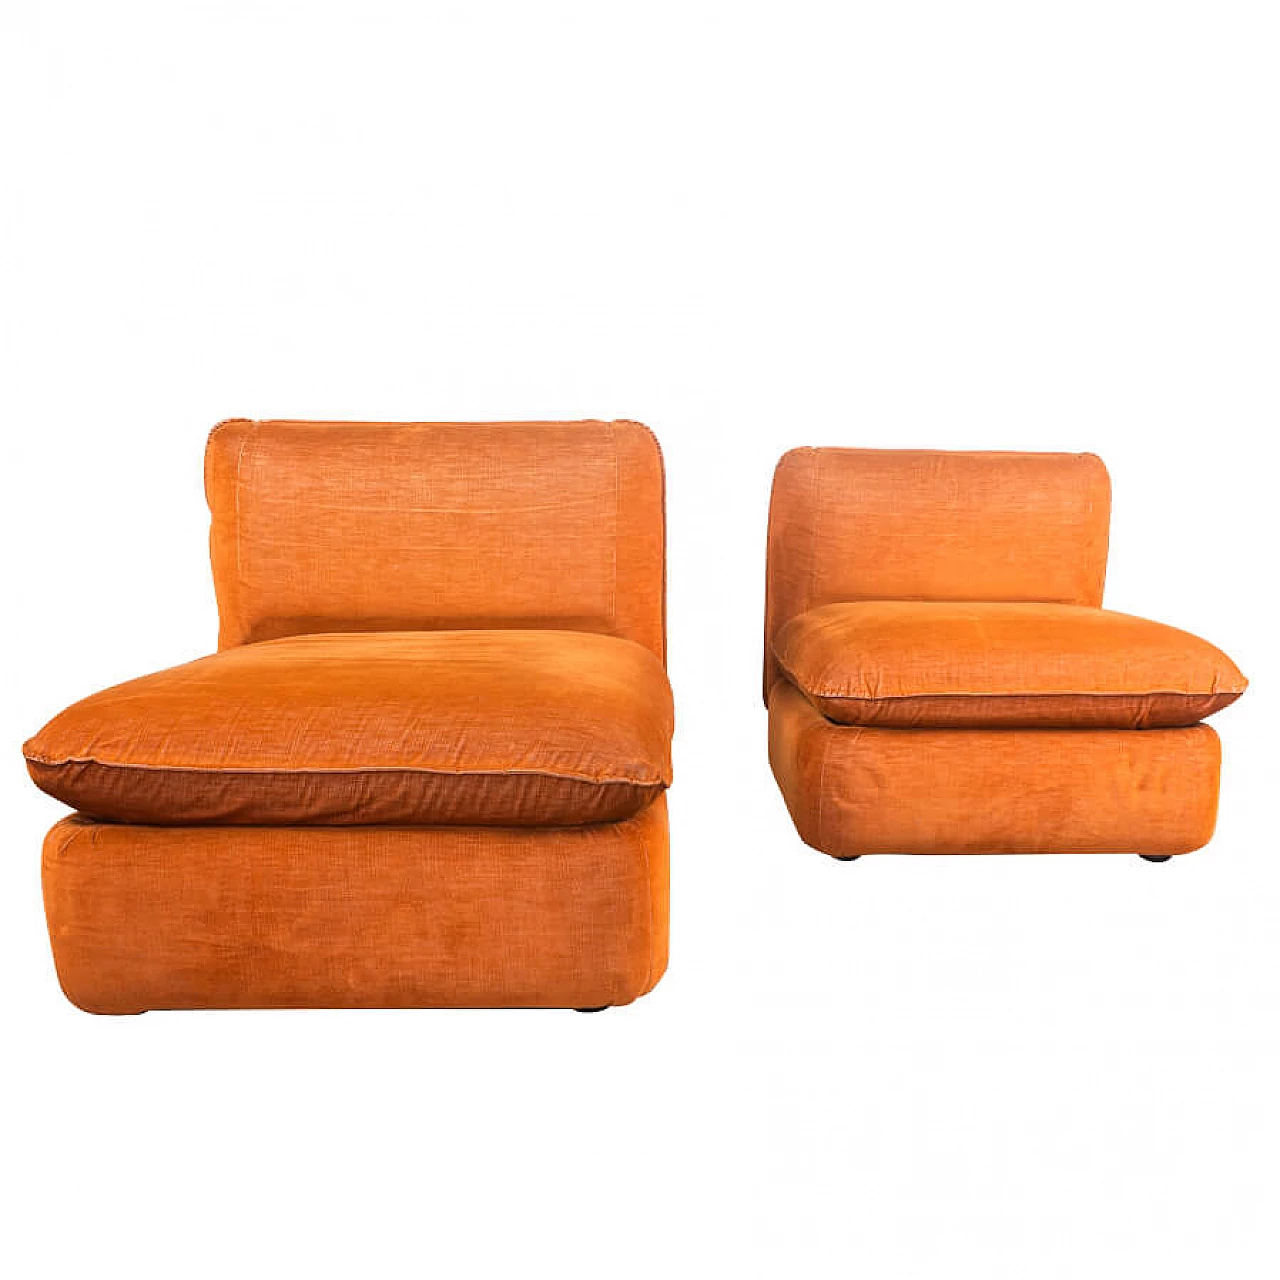 Pair of orange armchairs, 1970s 1231632